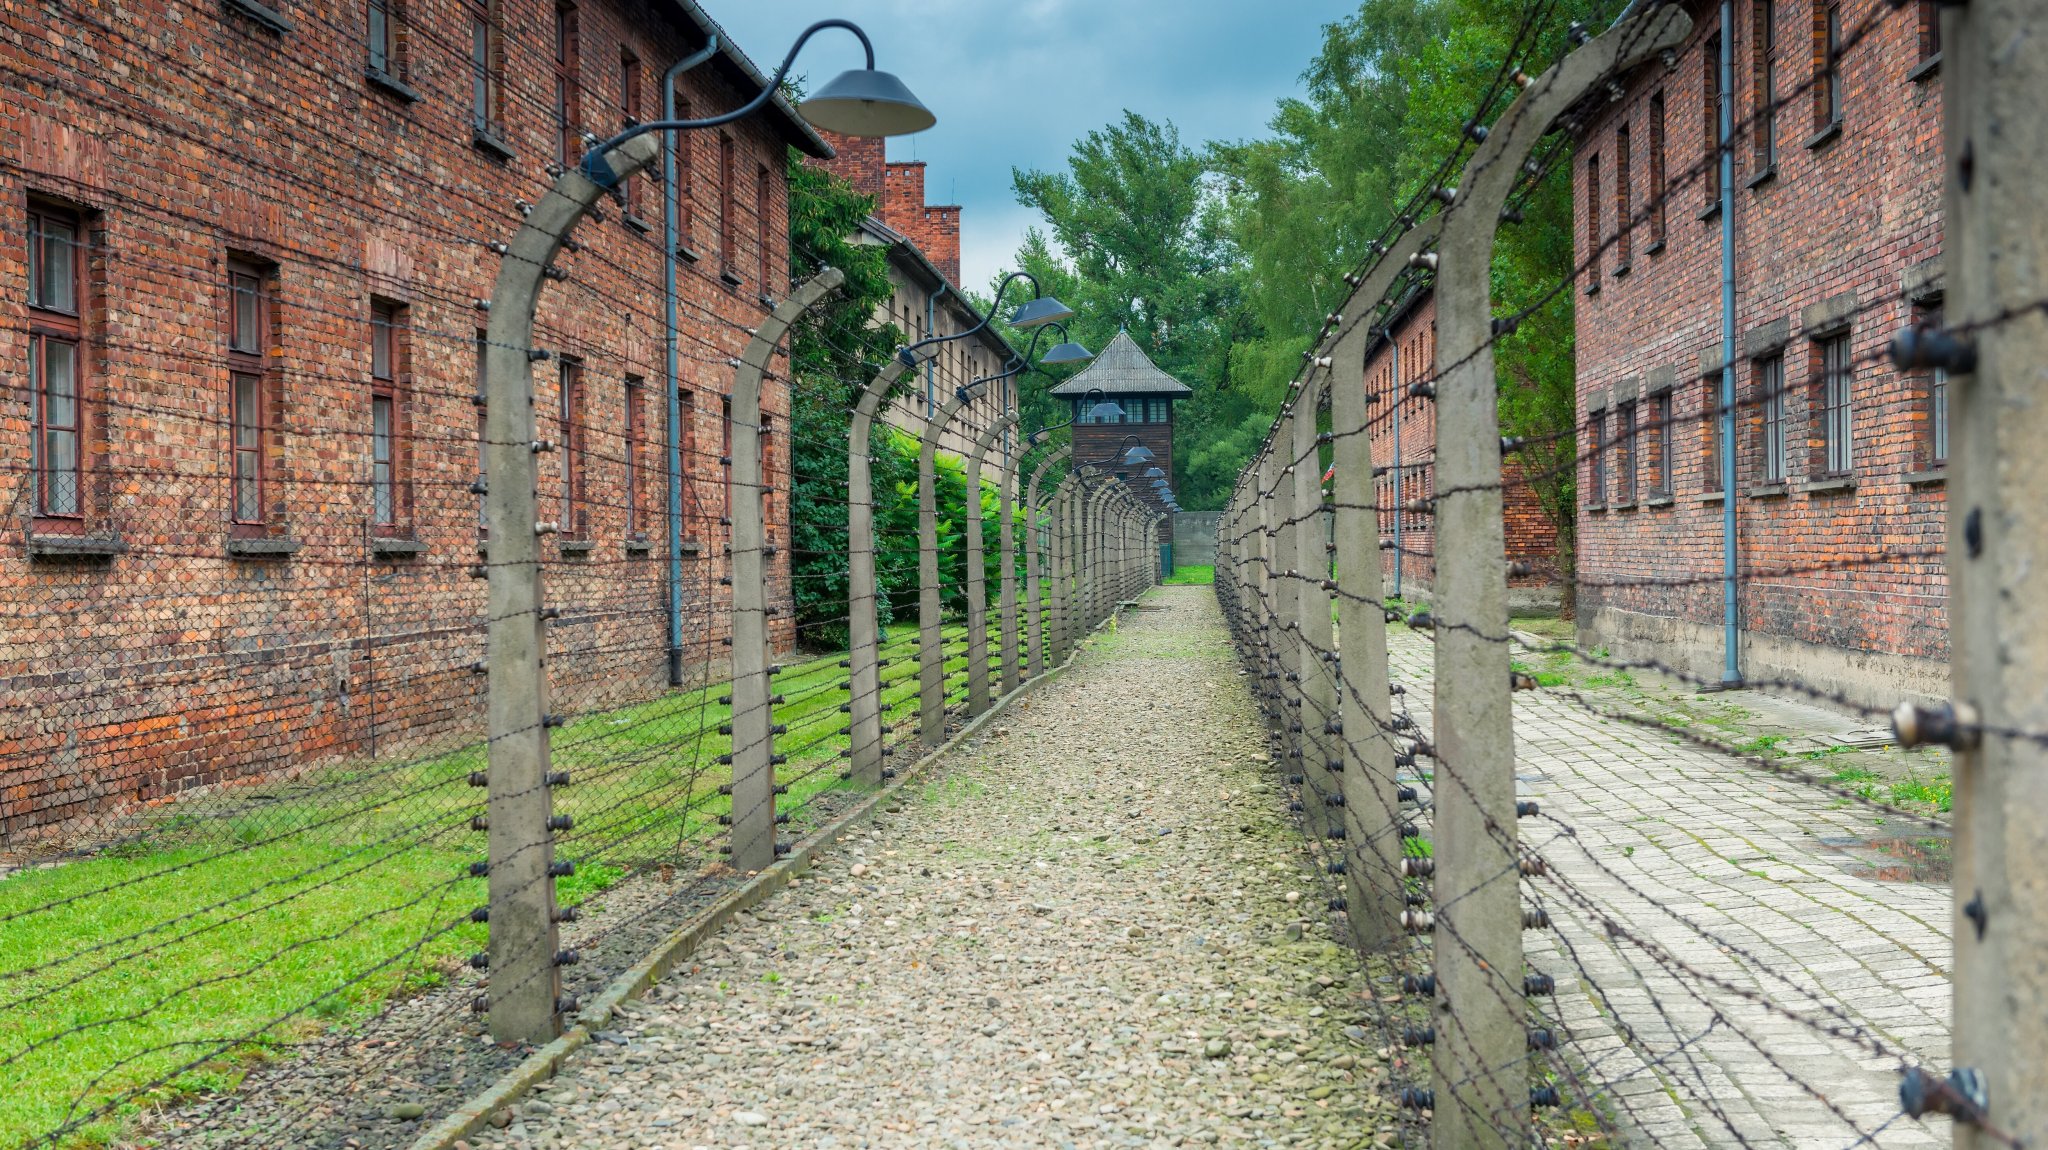 Holocaust-Gedenken: Warum #niewieder viel zu wenig ist